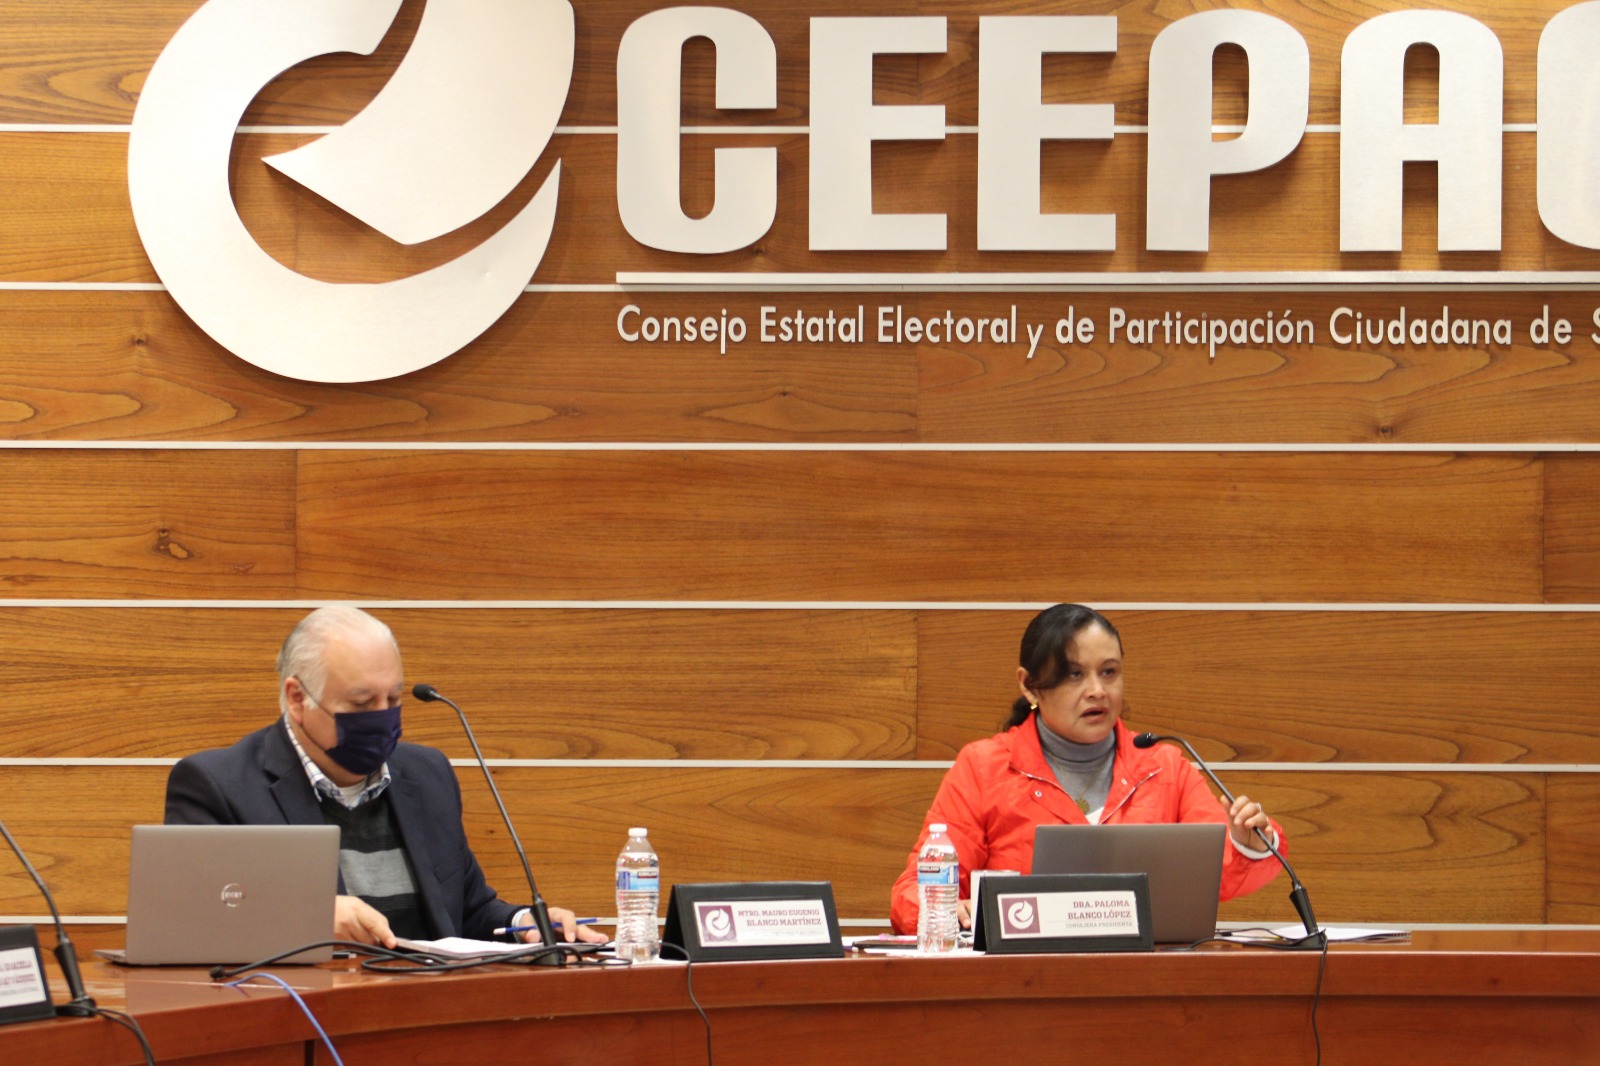 CEEPAC aprobó importantes modificaciones a los lineamientos que regulan la reelección de cargos en las diputaciones y ayuntamientos